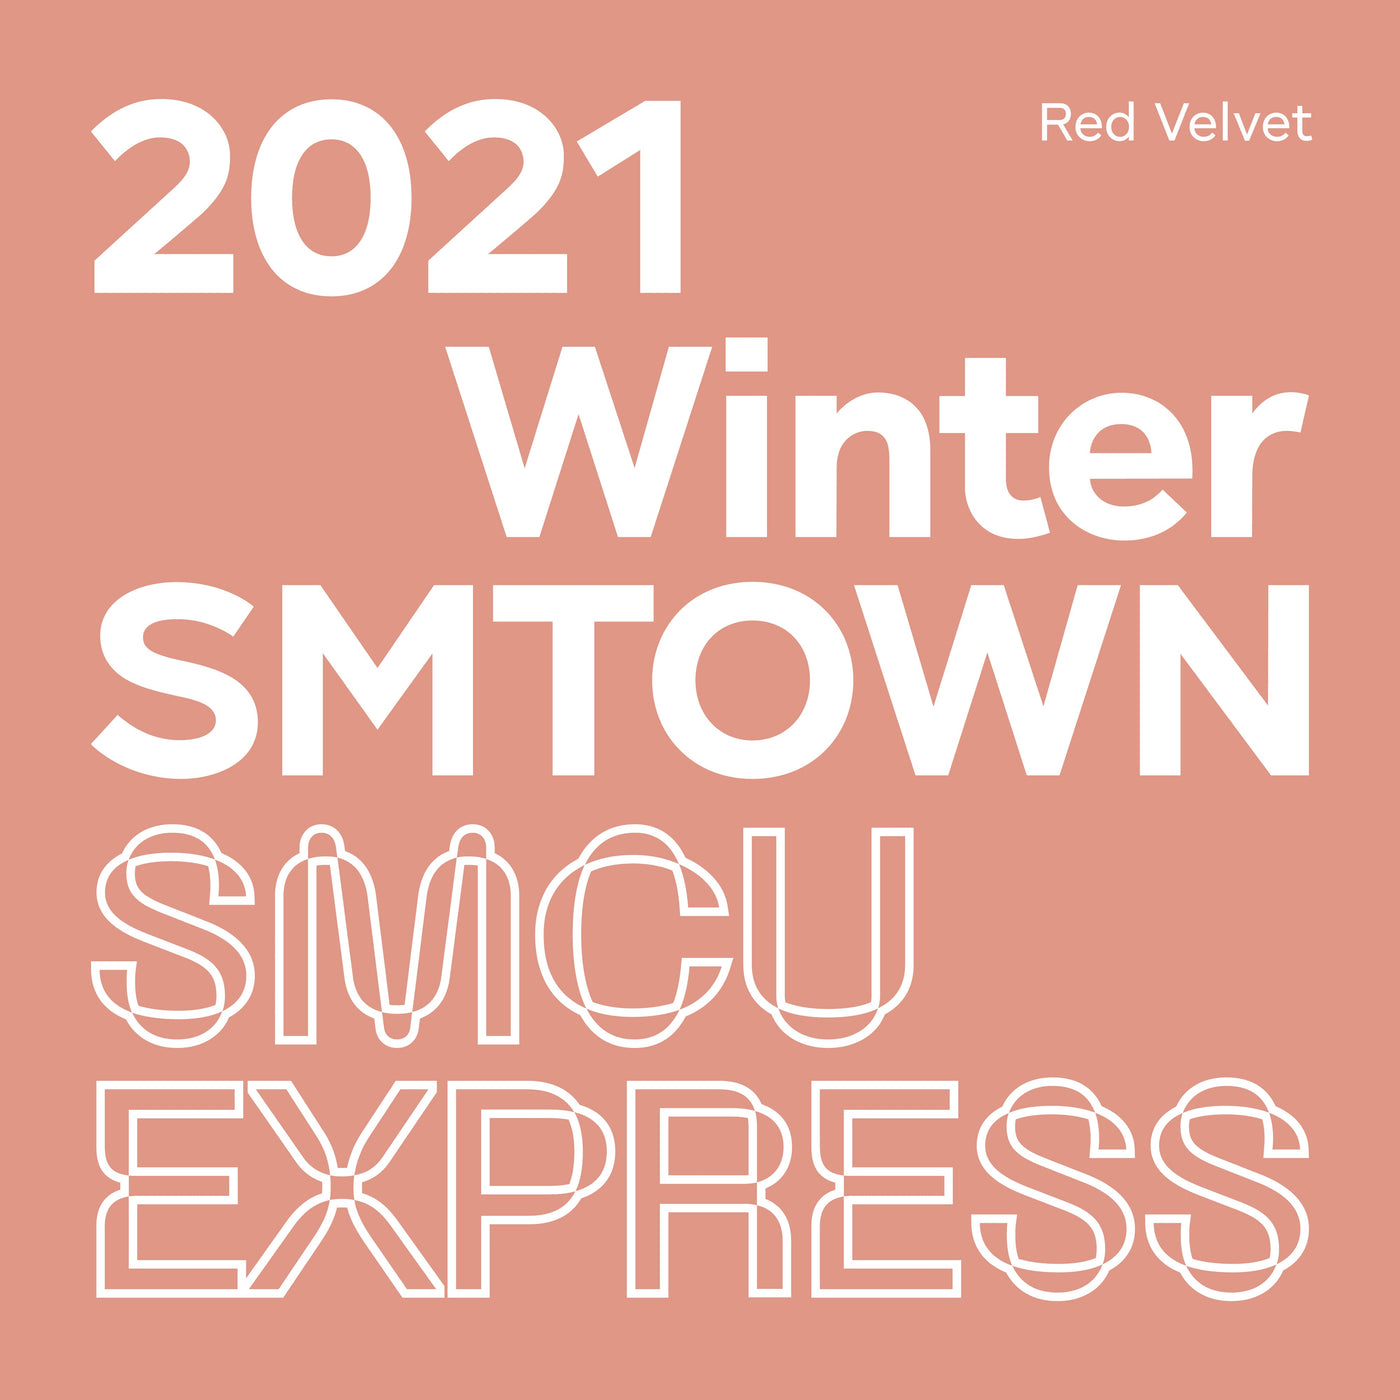 Red Velvet 2021 Winter SMTOWN : SMCU EXPRESS (Red Velvet) 🇰🇷